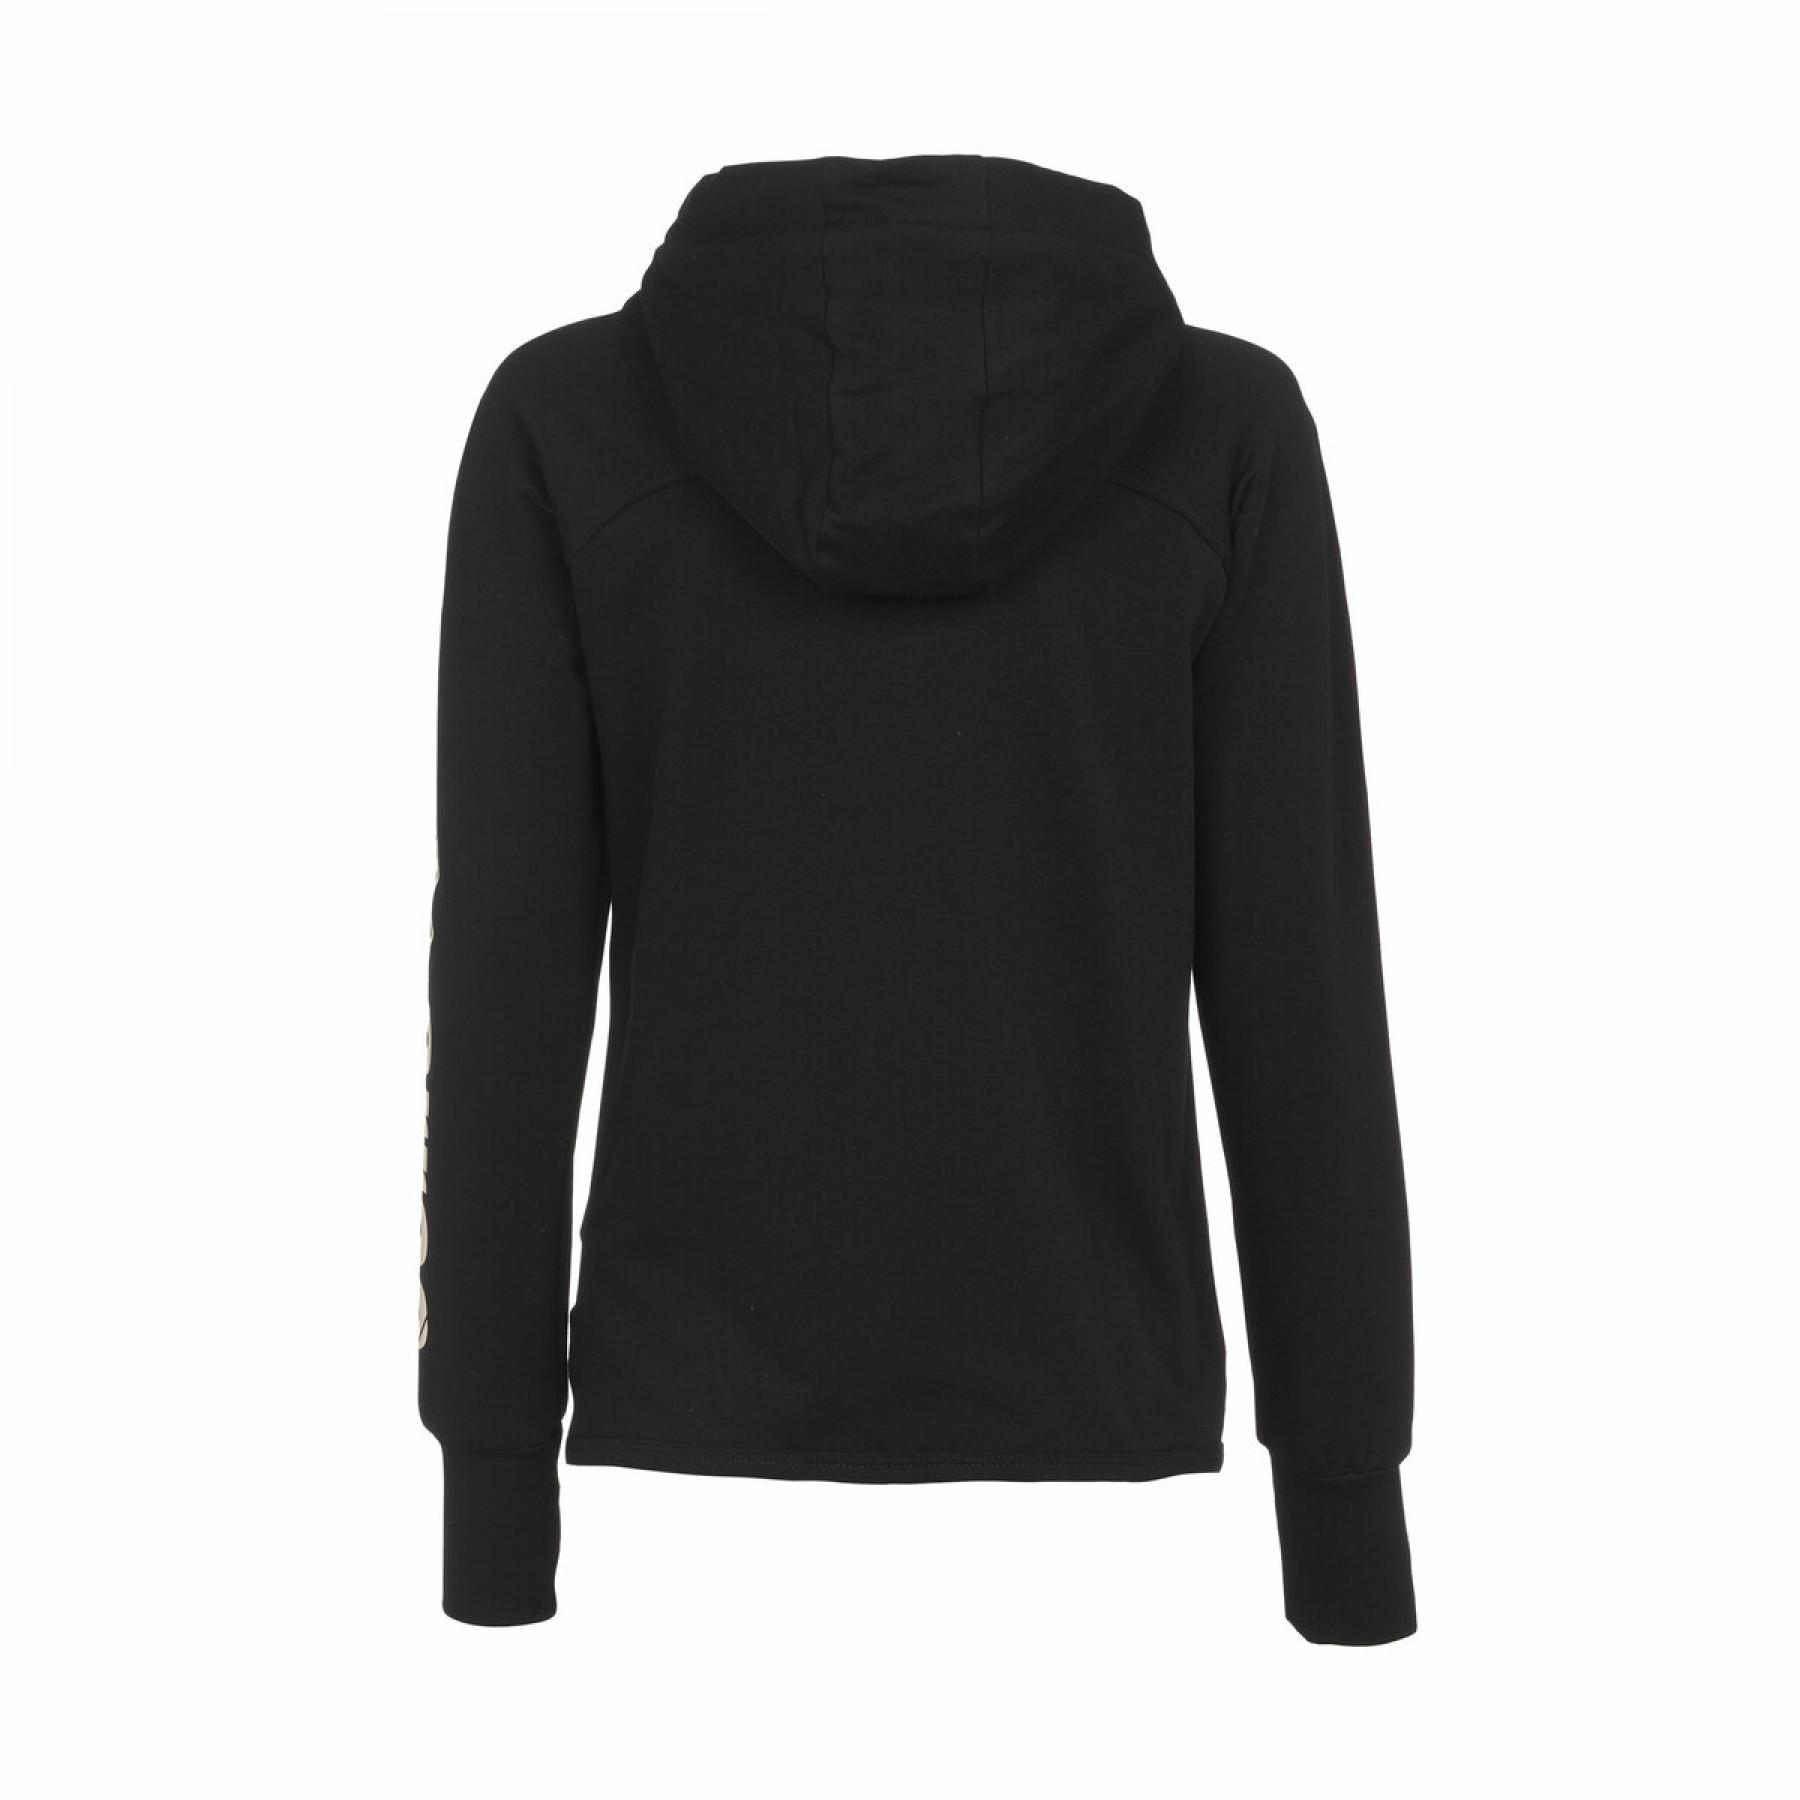 Sweatshirt mit durchgehendem Reißverschluss für Frauen Errea essential fleece